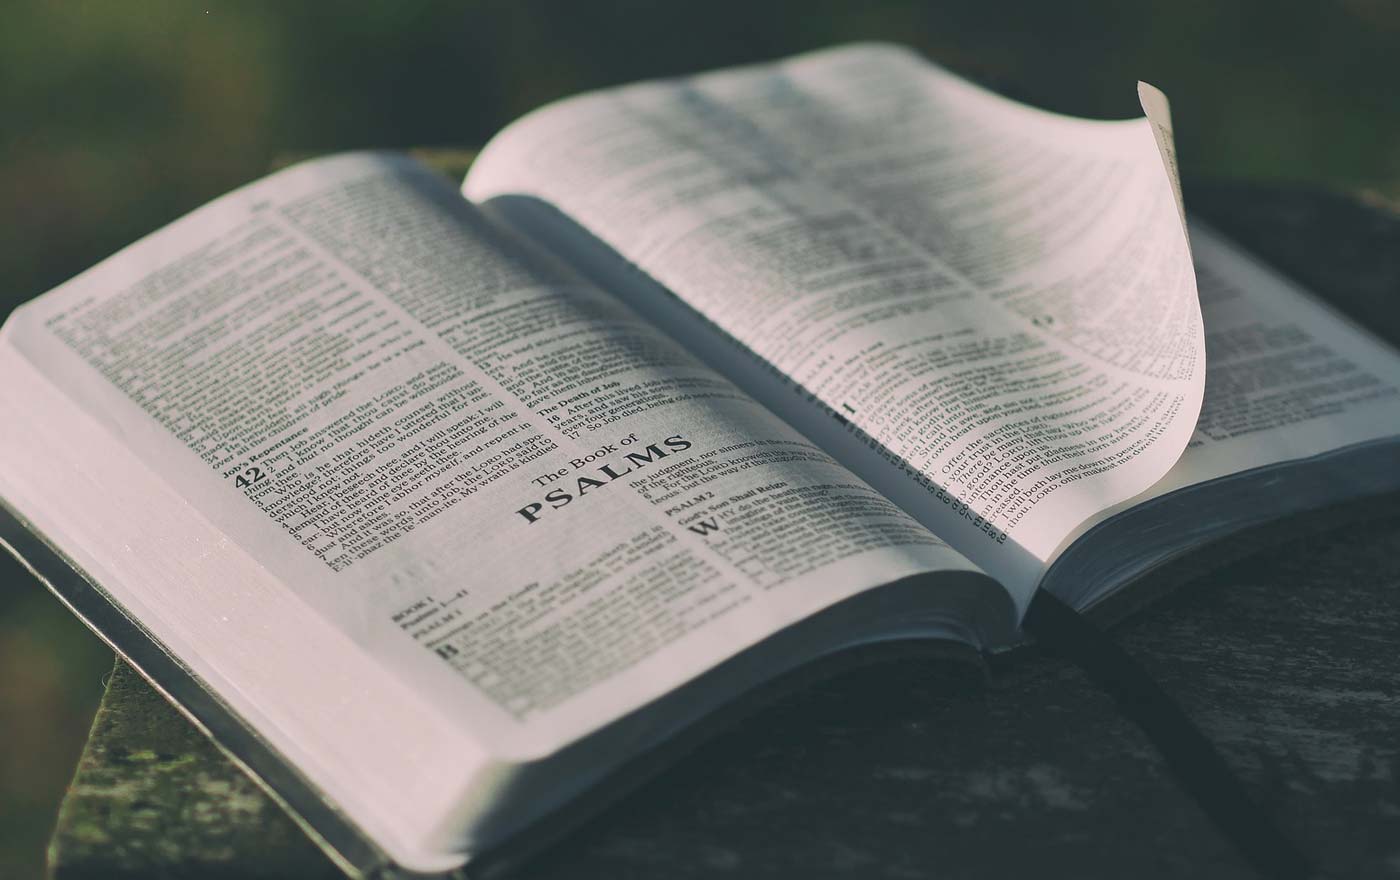 Massive Kritik am Missbrauch der Bibel durch Donald Trump kommt von der Evangelisch-theologischen Fakultät in Wien. Foto: pexels/pixabay